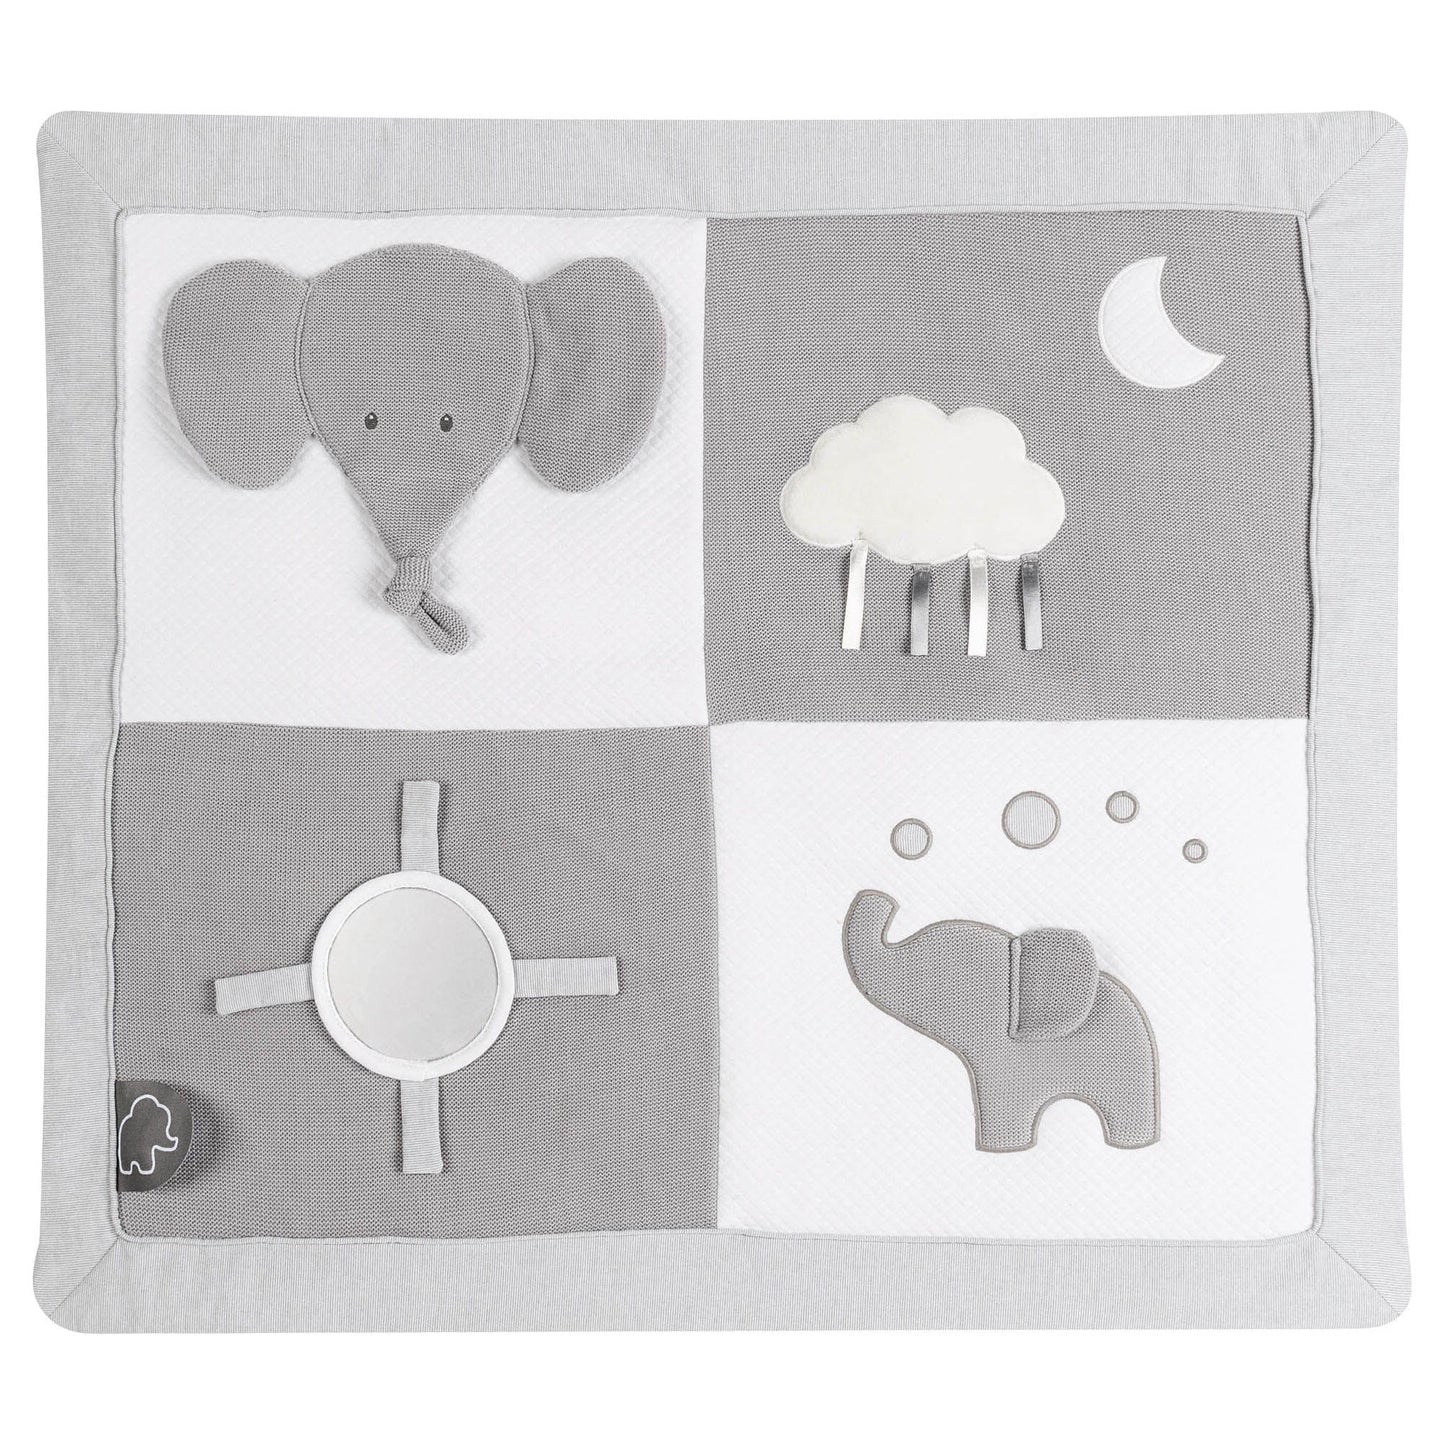 Nattou Baby Playmat - Tembo Elephant sheet close up